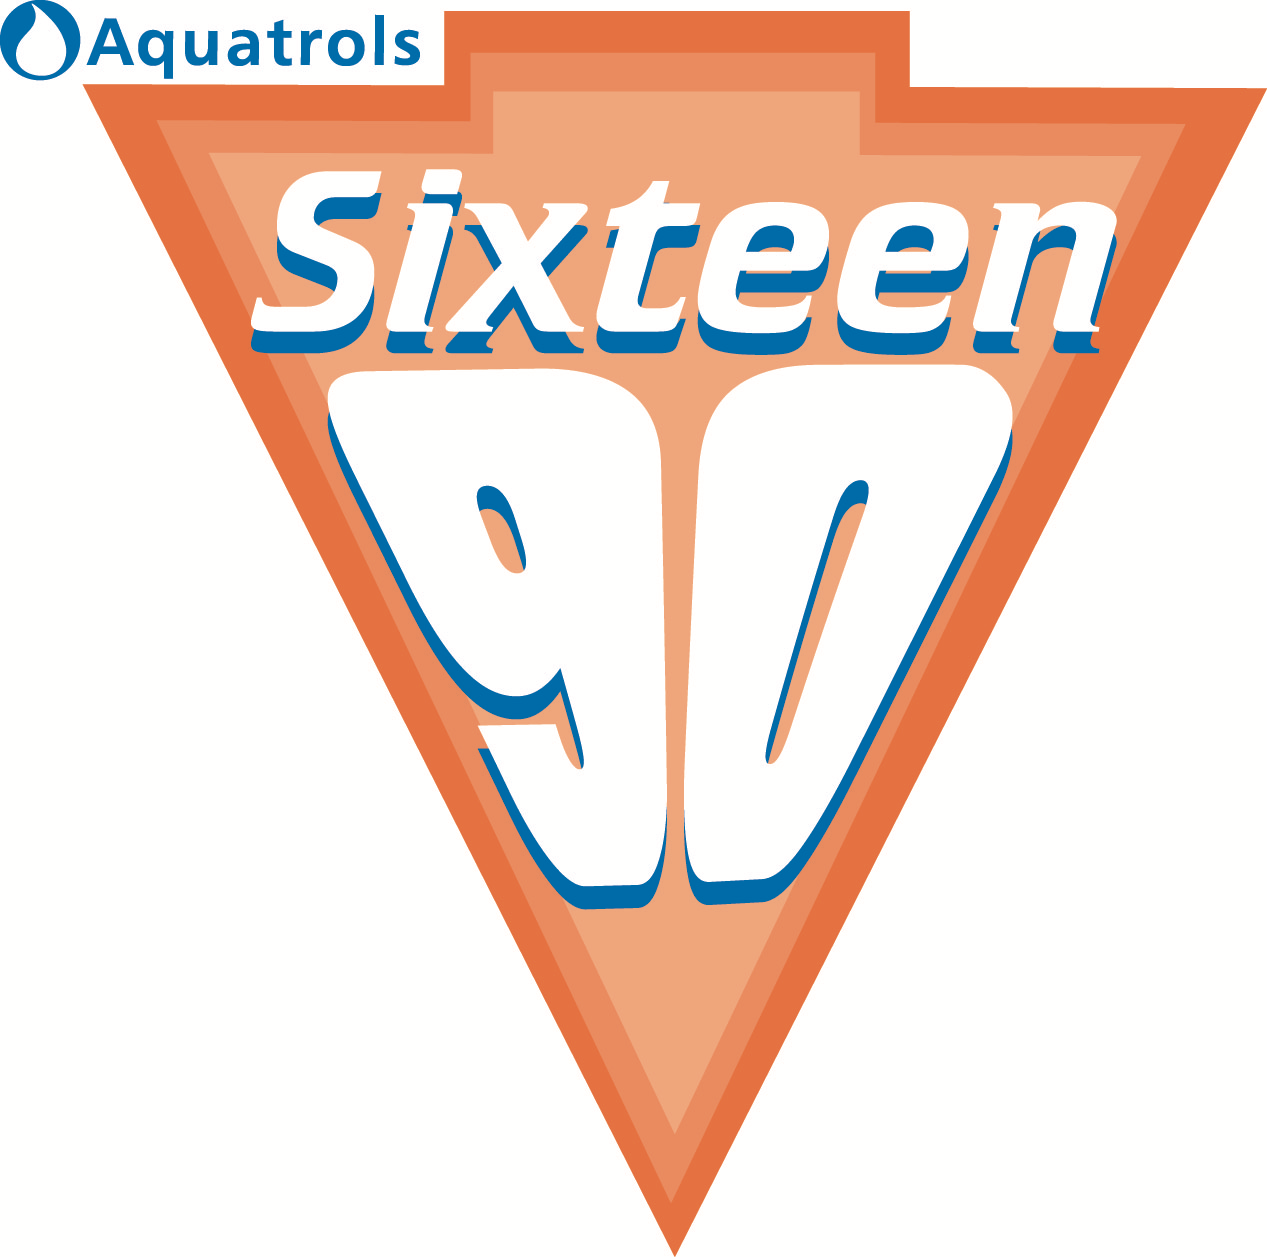 Aquatrols Sixteen90 logo copy